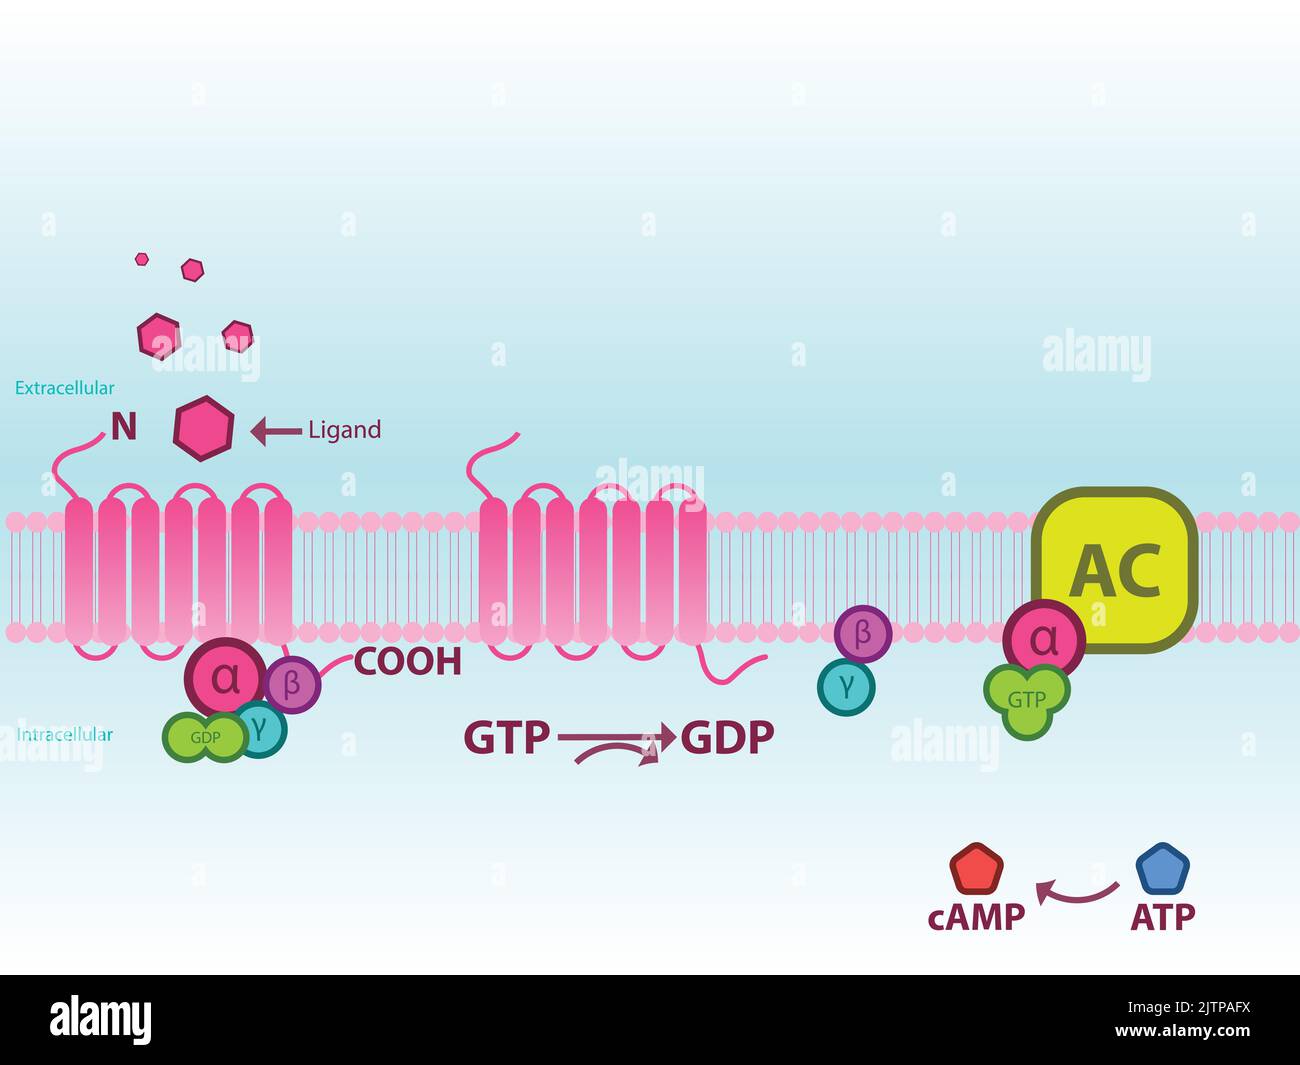 Prozess der Aktivierung der Adenylatcyclase über GPCR GS und Amplifikation der Lagerproduktion. Infografik für Bildung, Pharmakologie, Biologie. Stock Vektor